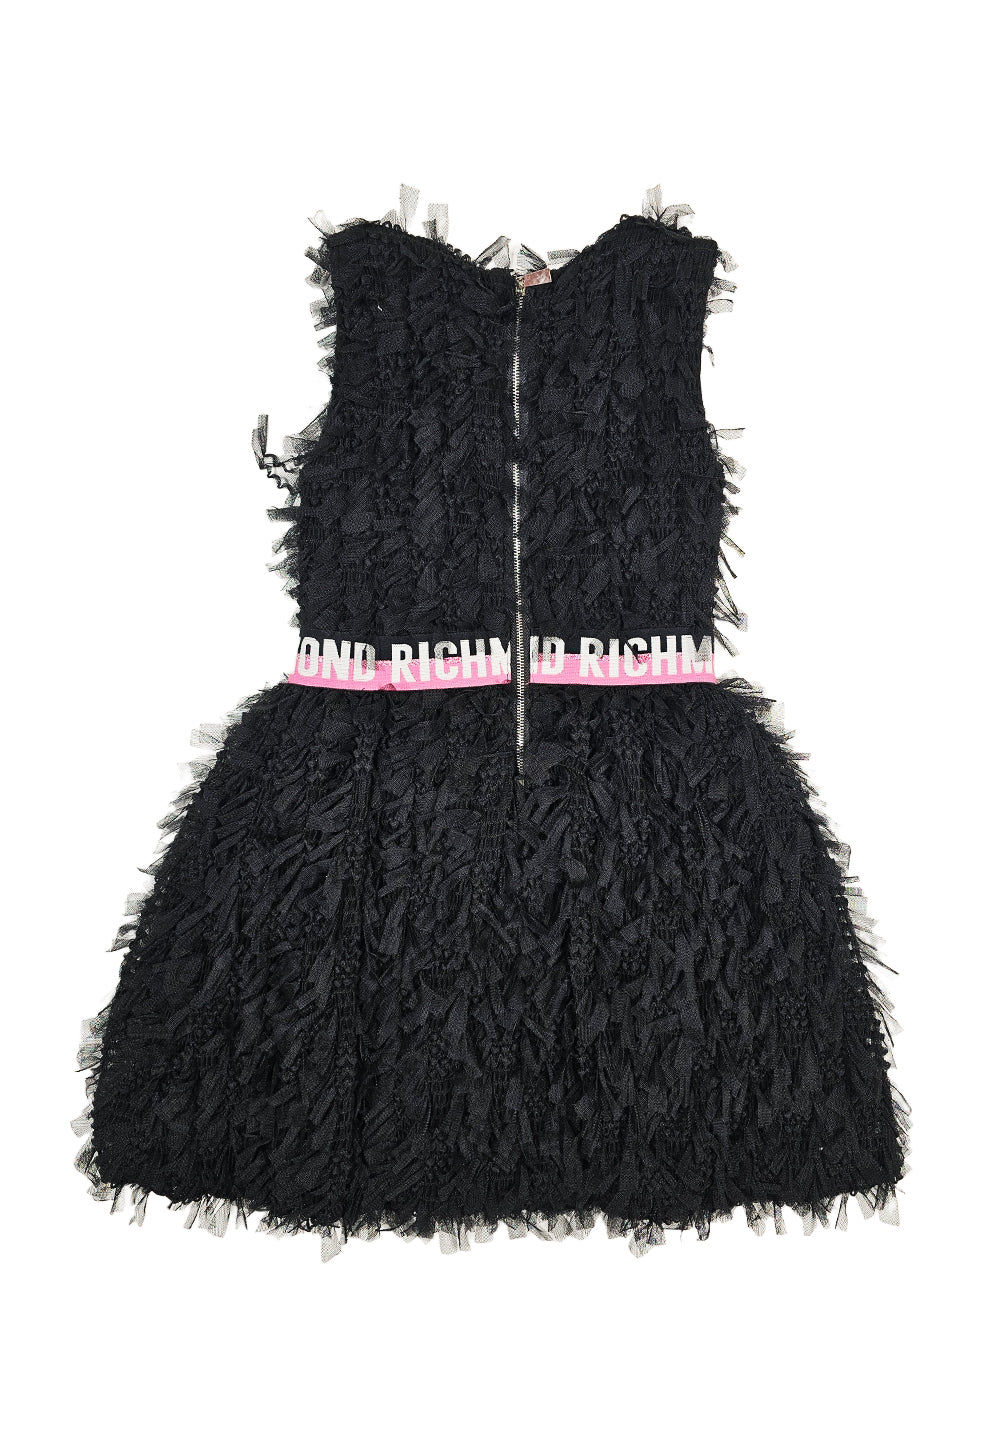 Black tulle dress for girls